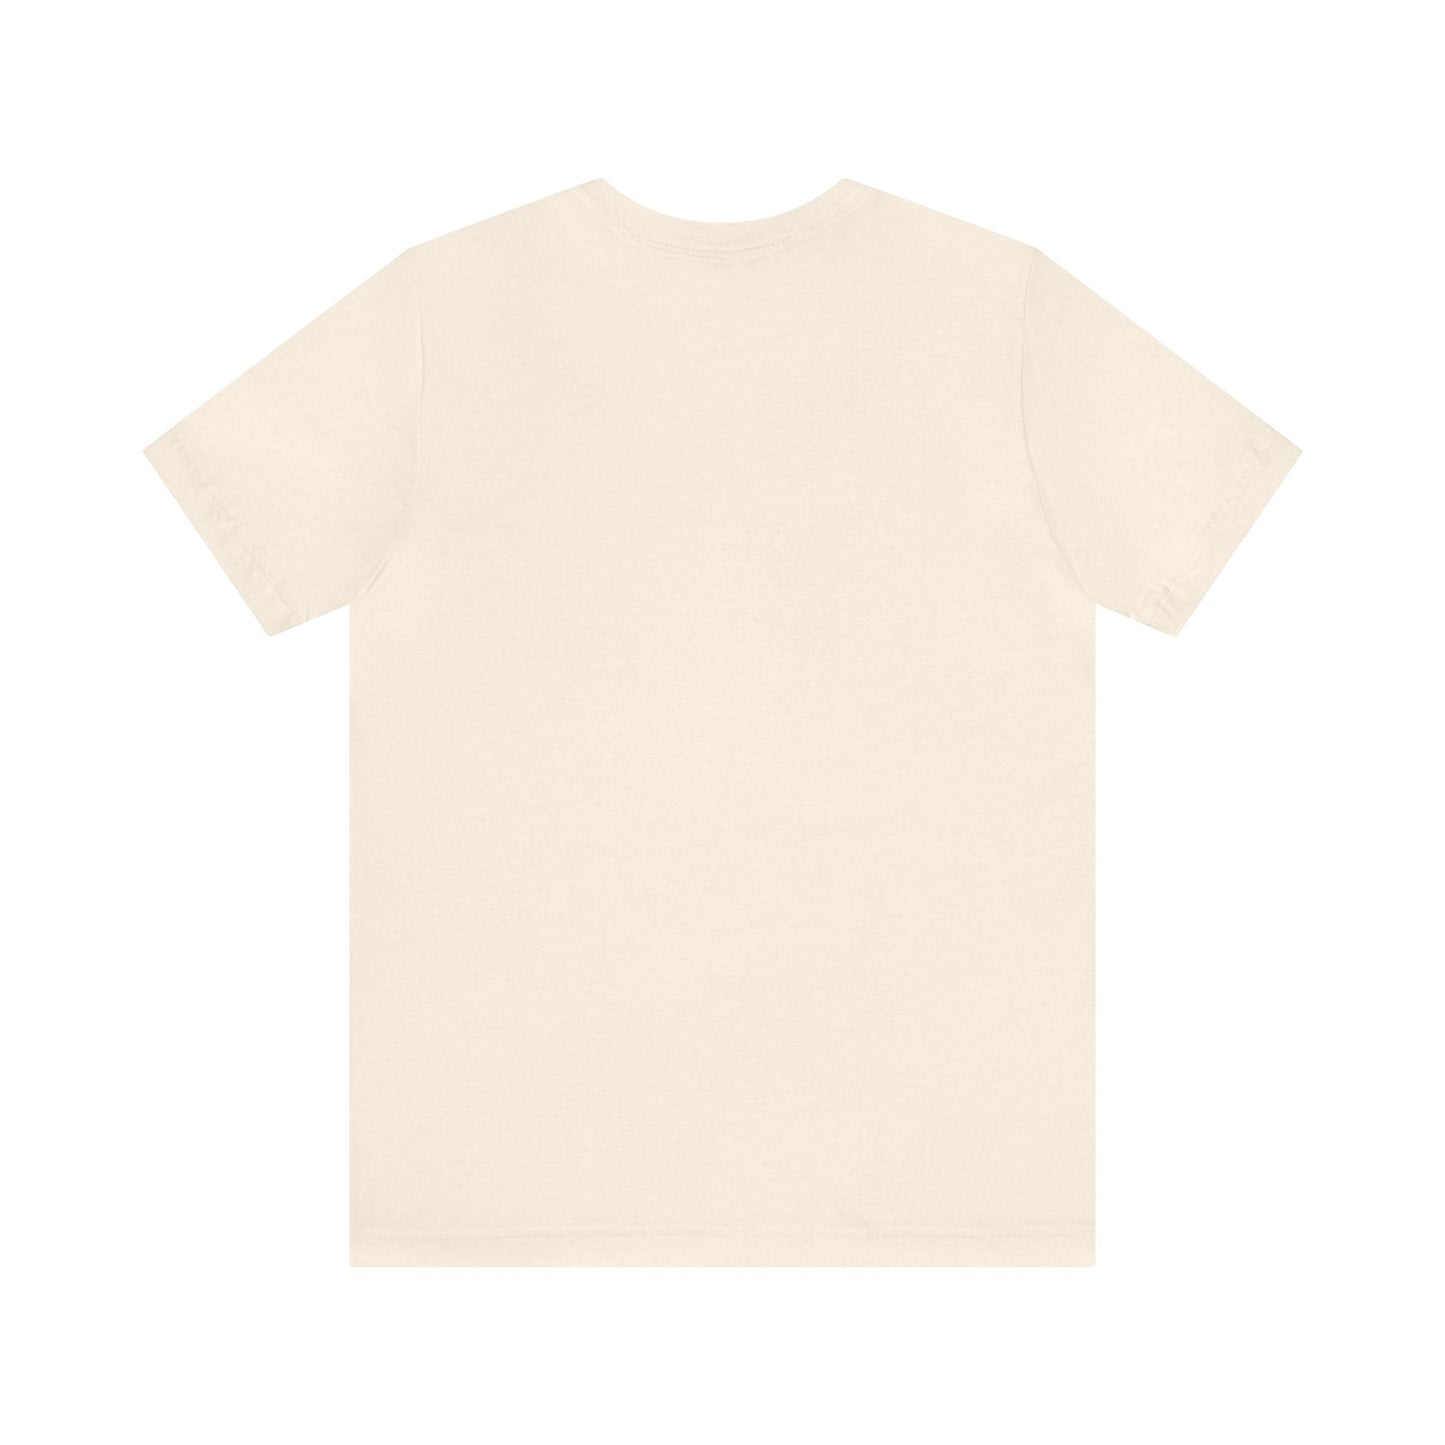 Unisex Jersey Short Sleeve Heather Natural T Shirt